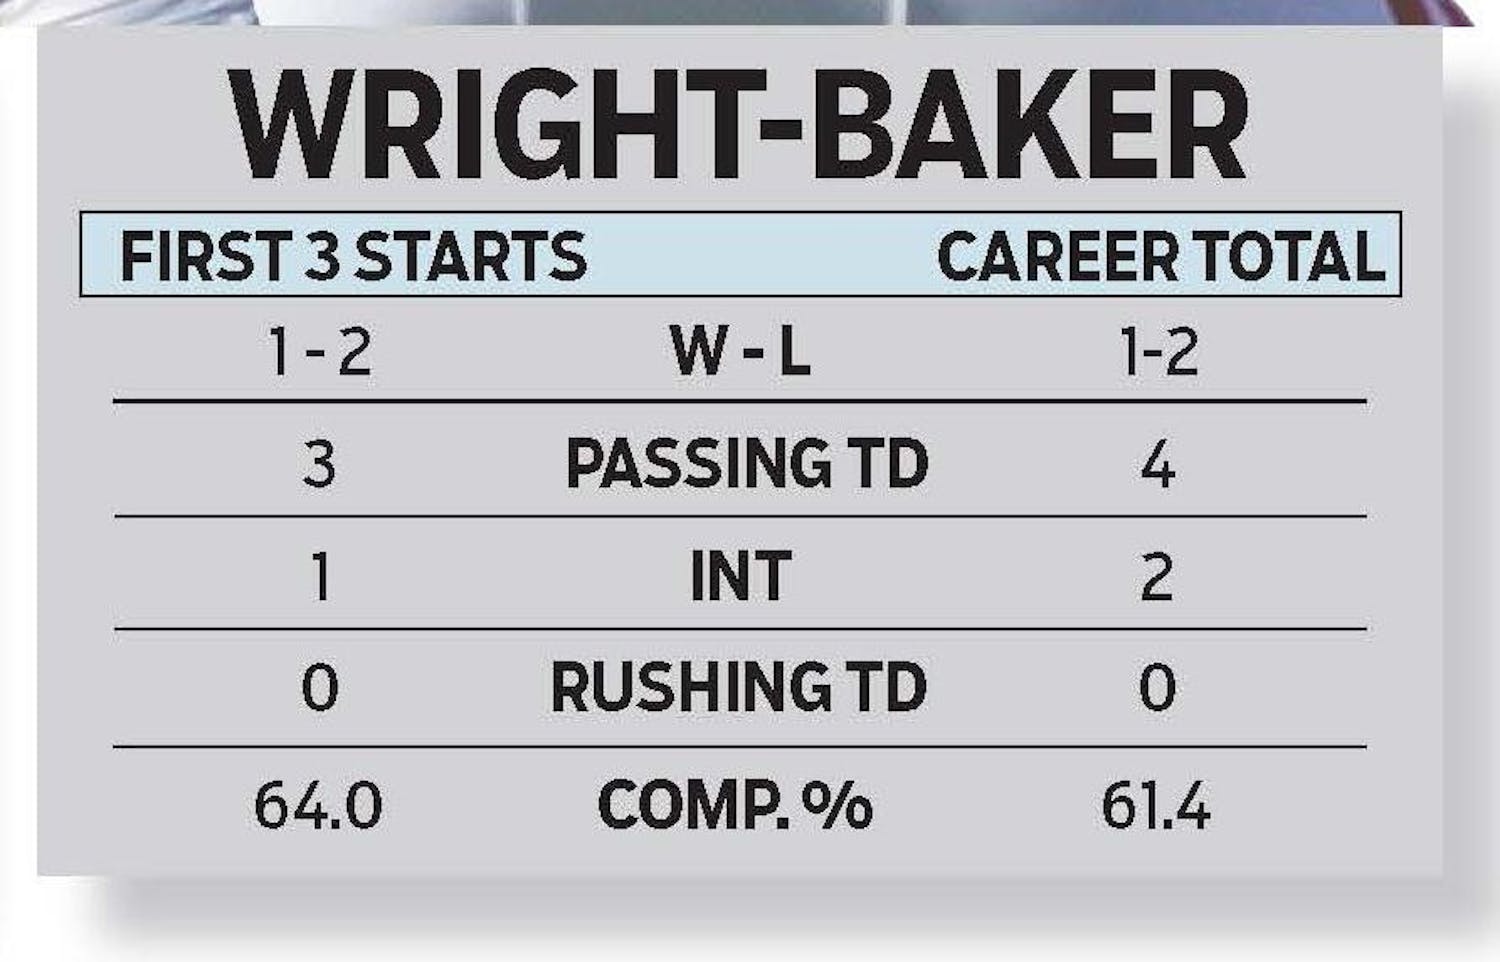 Wright-Baker